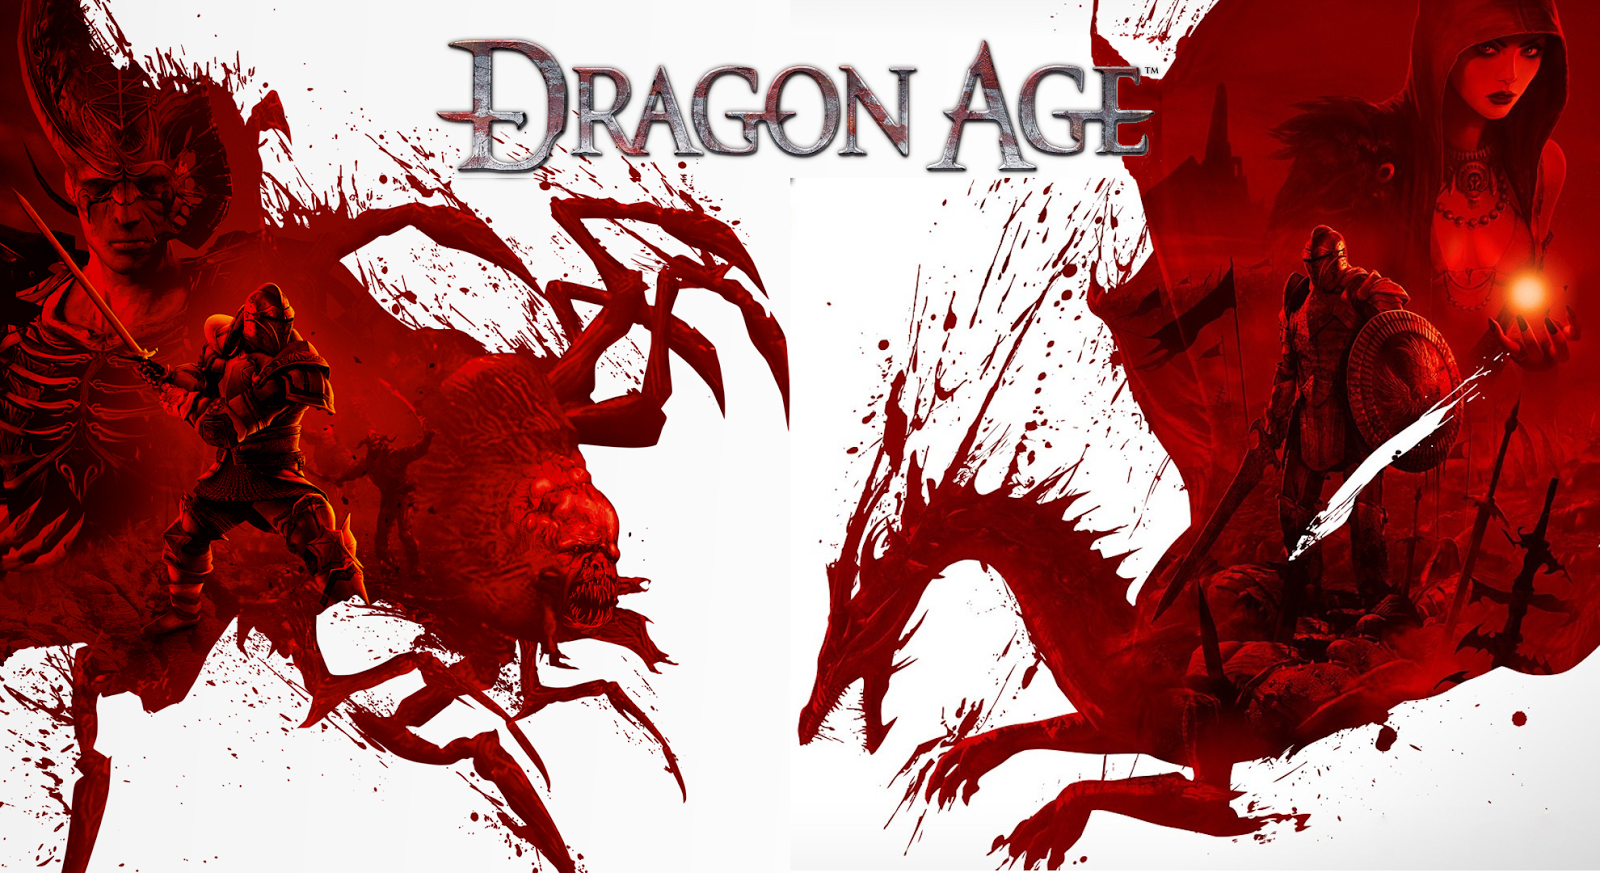 Through the Dragon Age